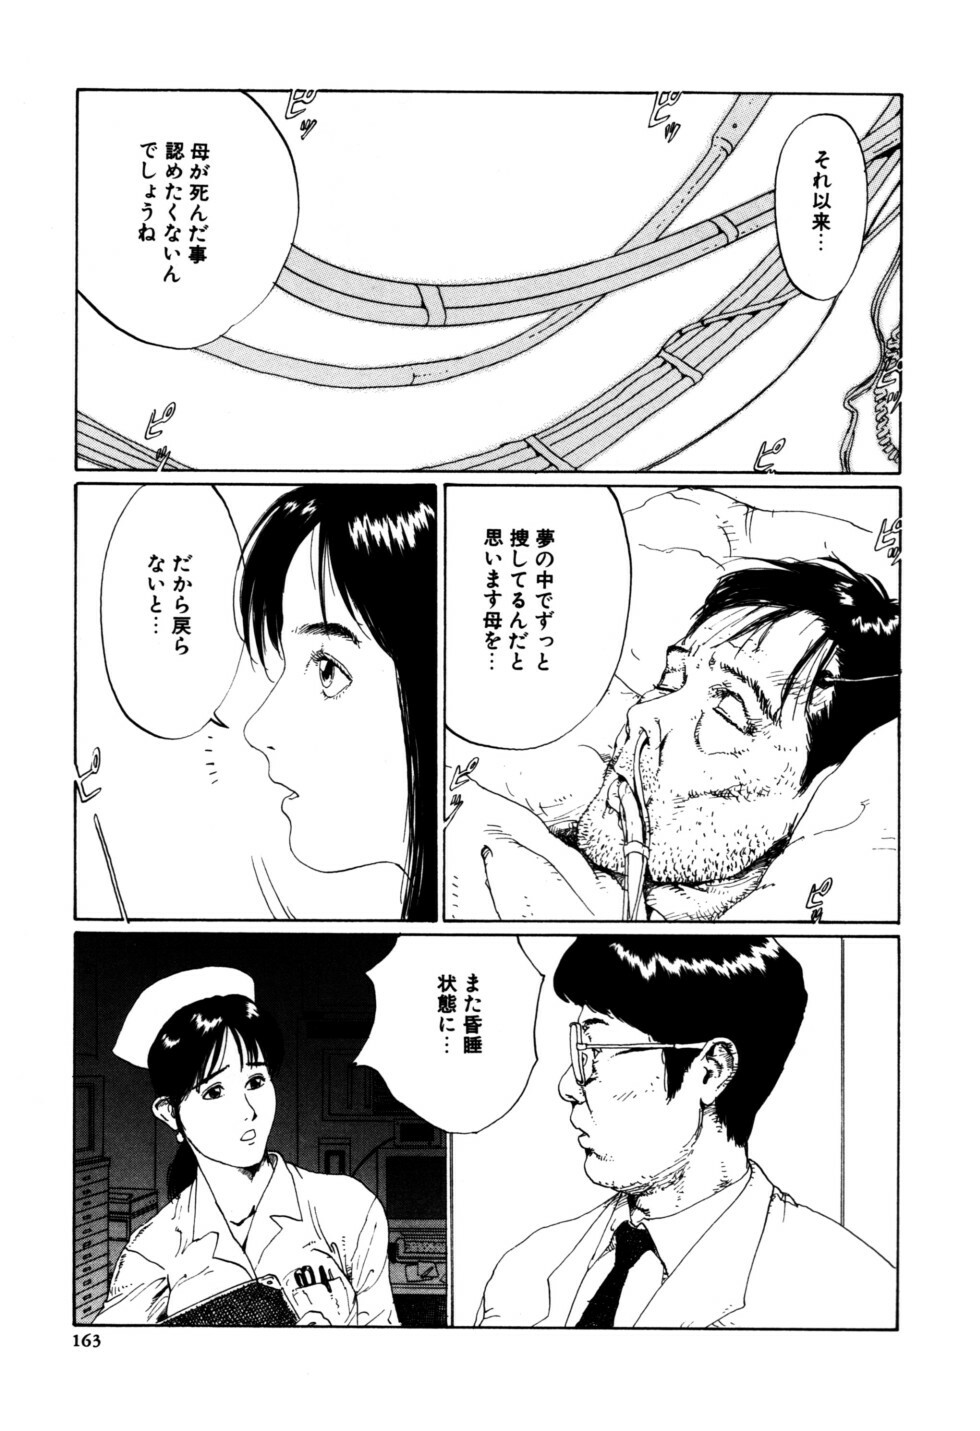 [Shirogane Anjyu] Nukumori No Kioku page 163 full